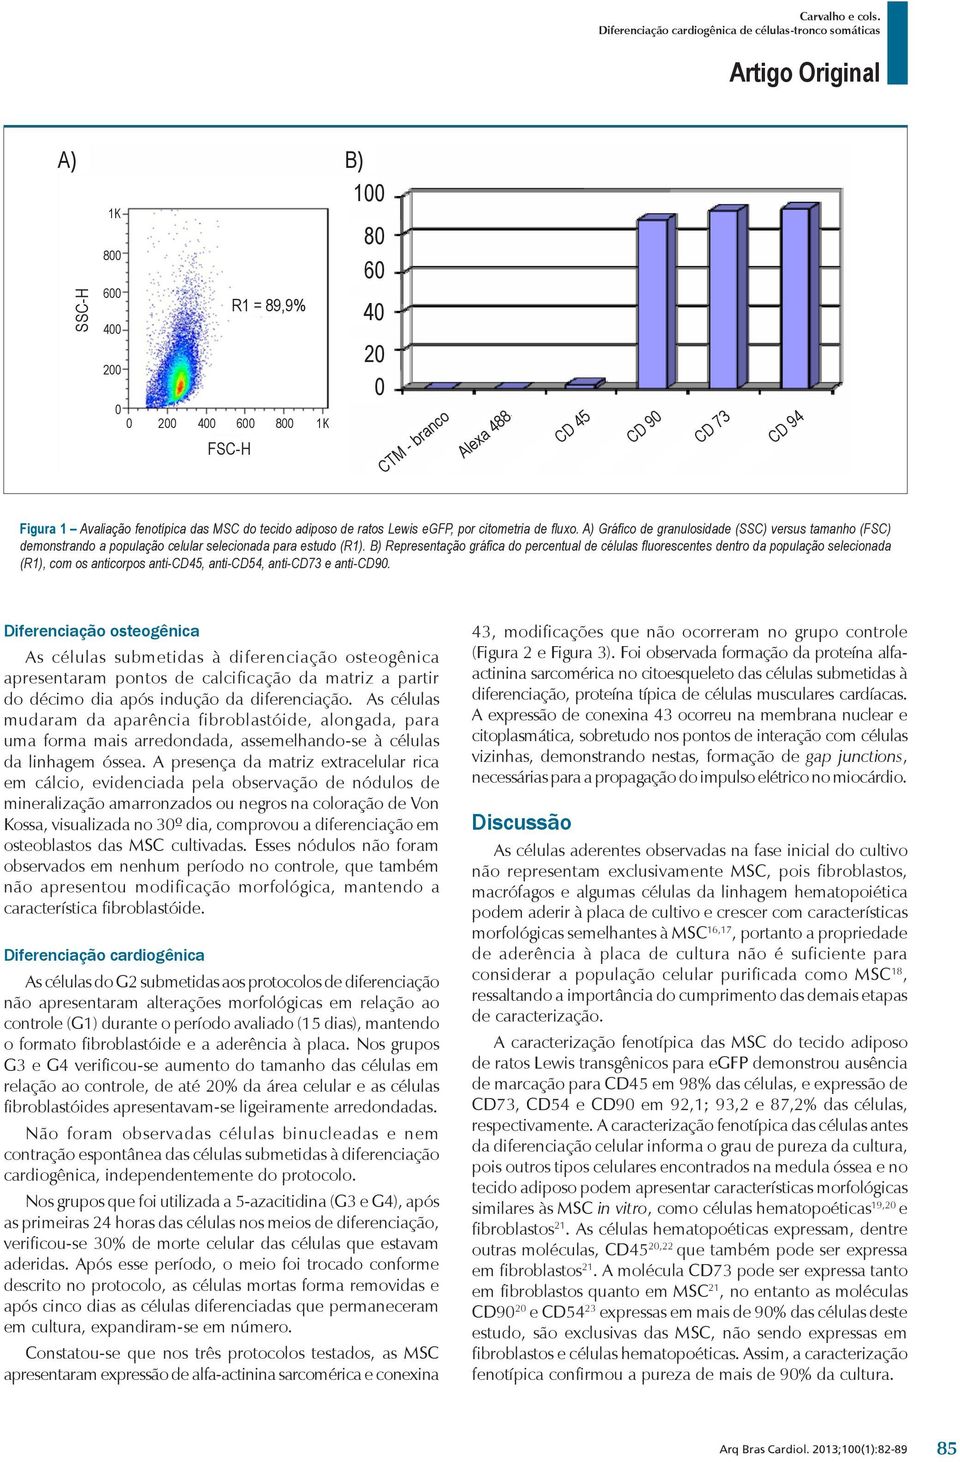 B) Representação gráfica do percentual de células fluorescentes dentro da população selecionada (R1), com os anticorpos anti-cd45, anti-cd54, anti-cd73 e anti-cd90.